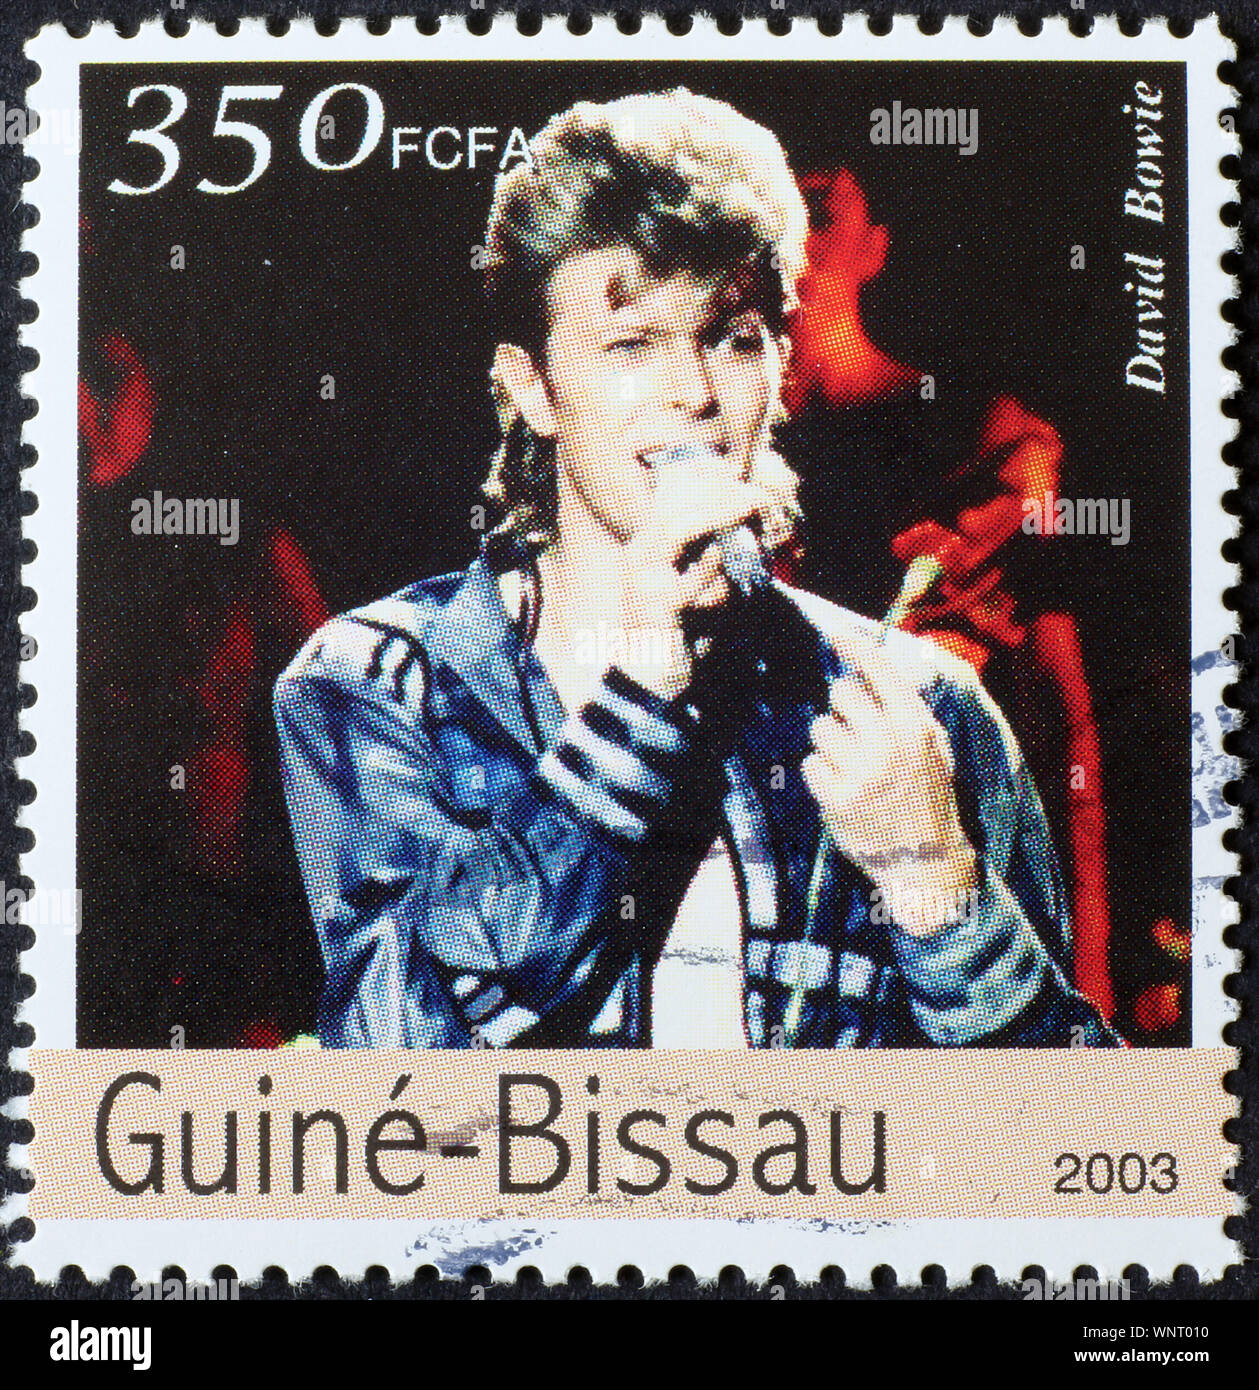 David Bowie auf Briefmarke von Guinea-Bissau Stockfoto